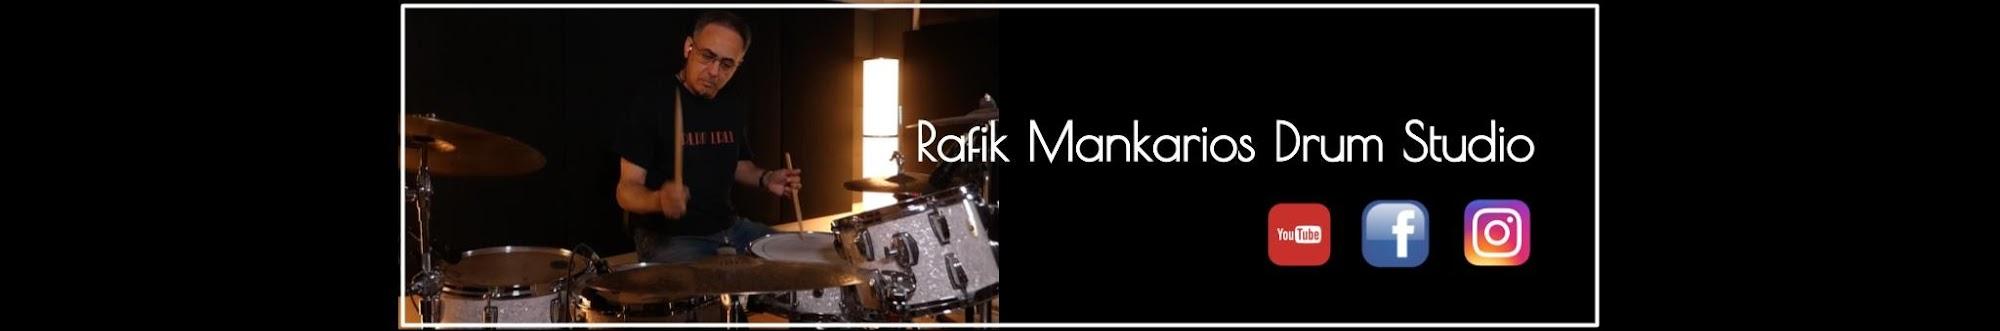 Rafik Mankarios - Drum Studio